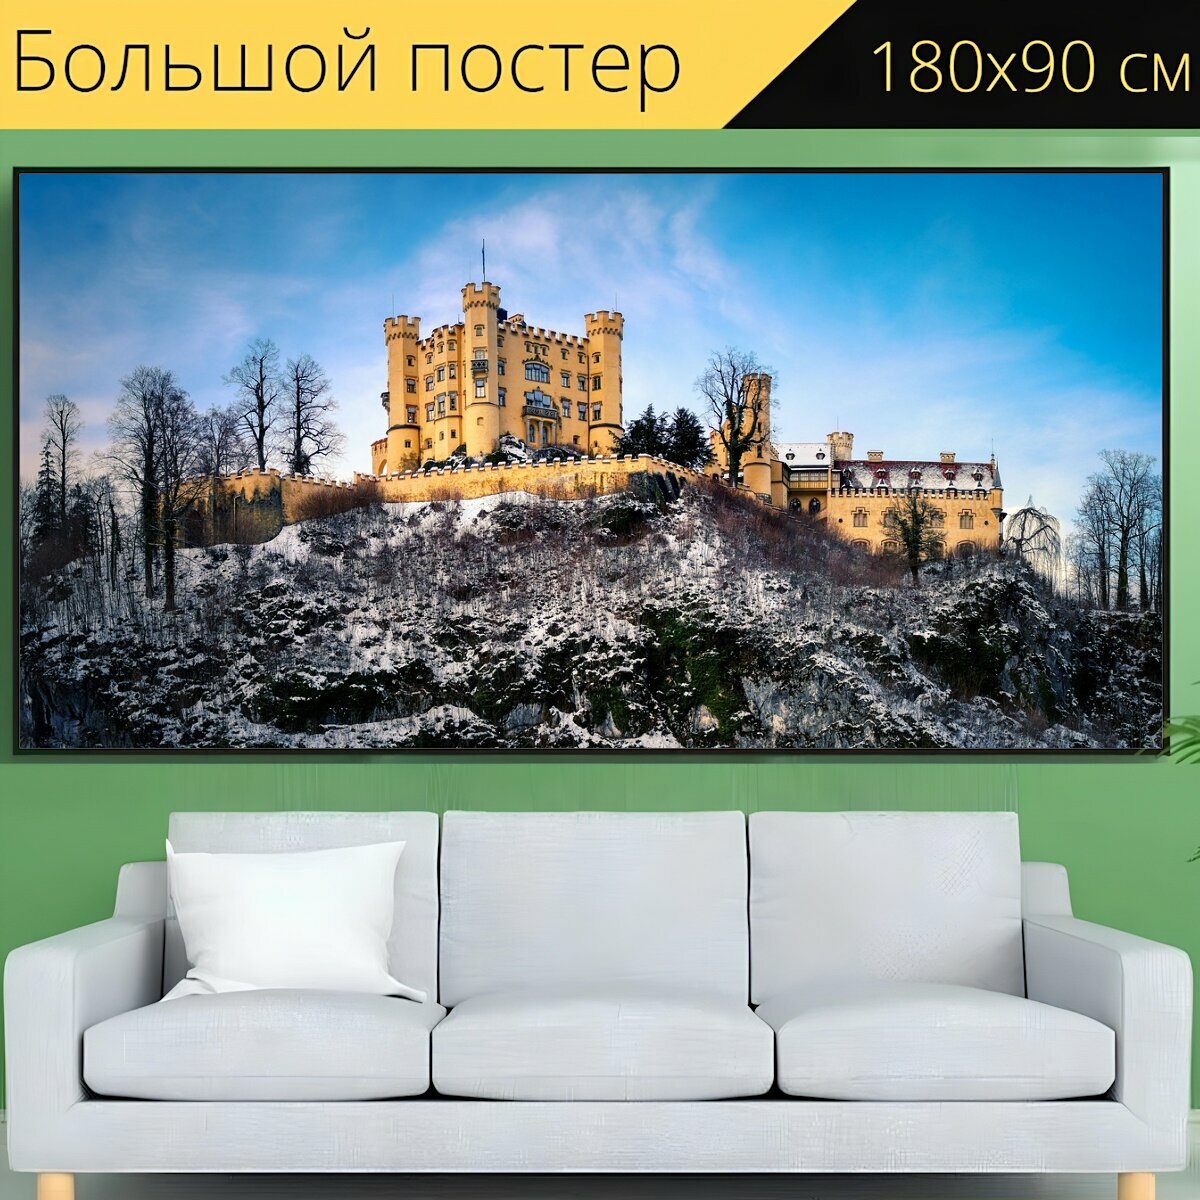 Большой постер "Замок, хоэншвангау, зима" 180 x 90 см. для интерьера